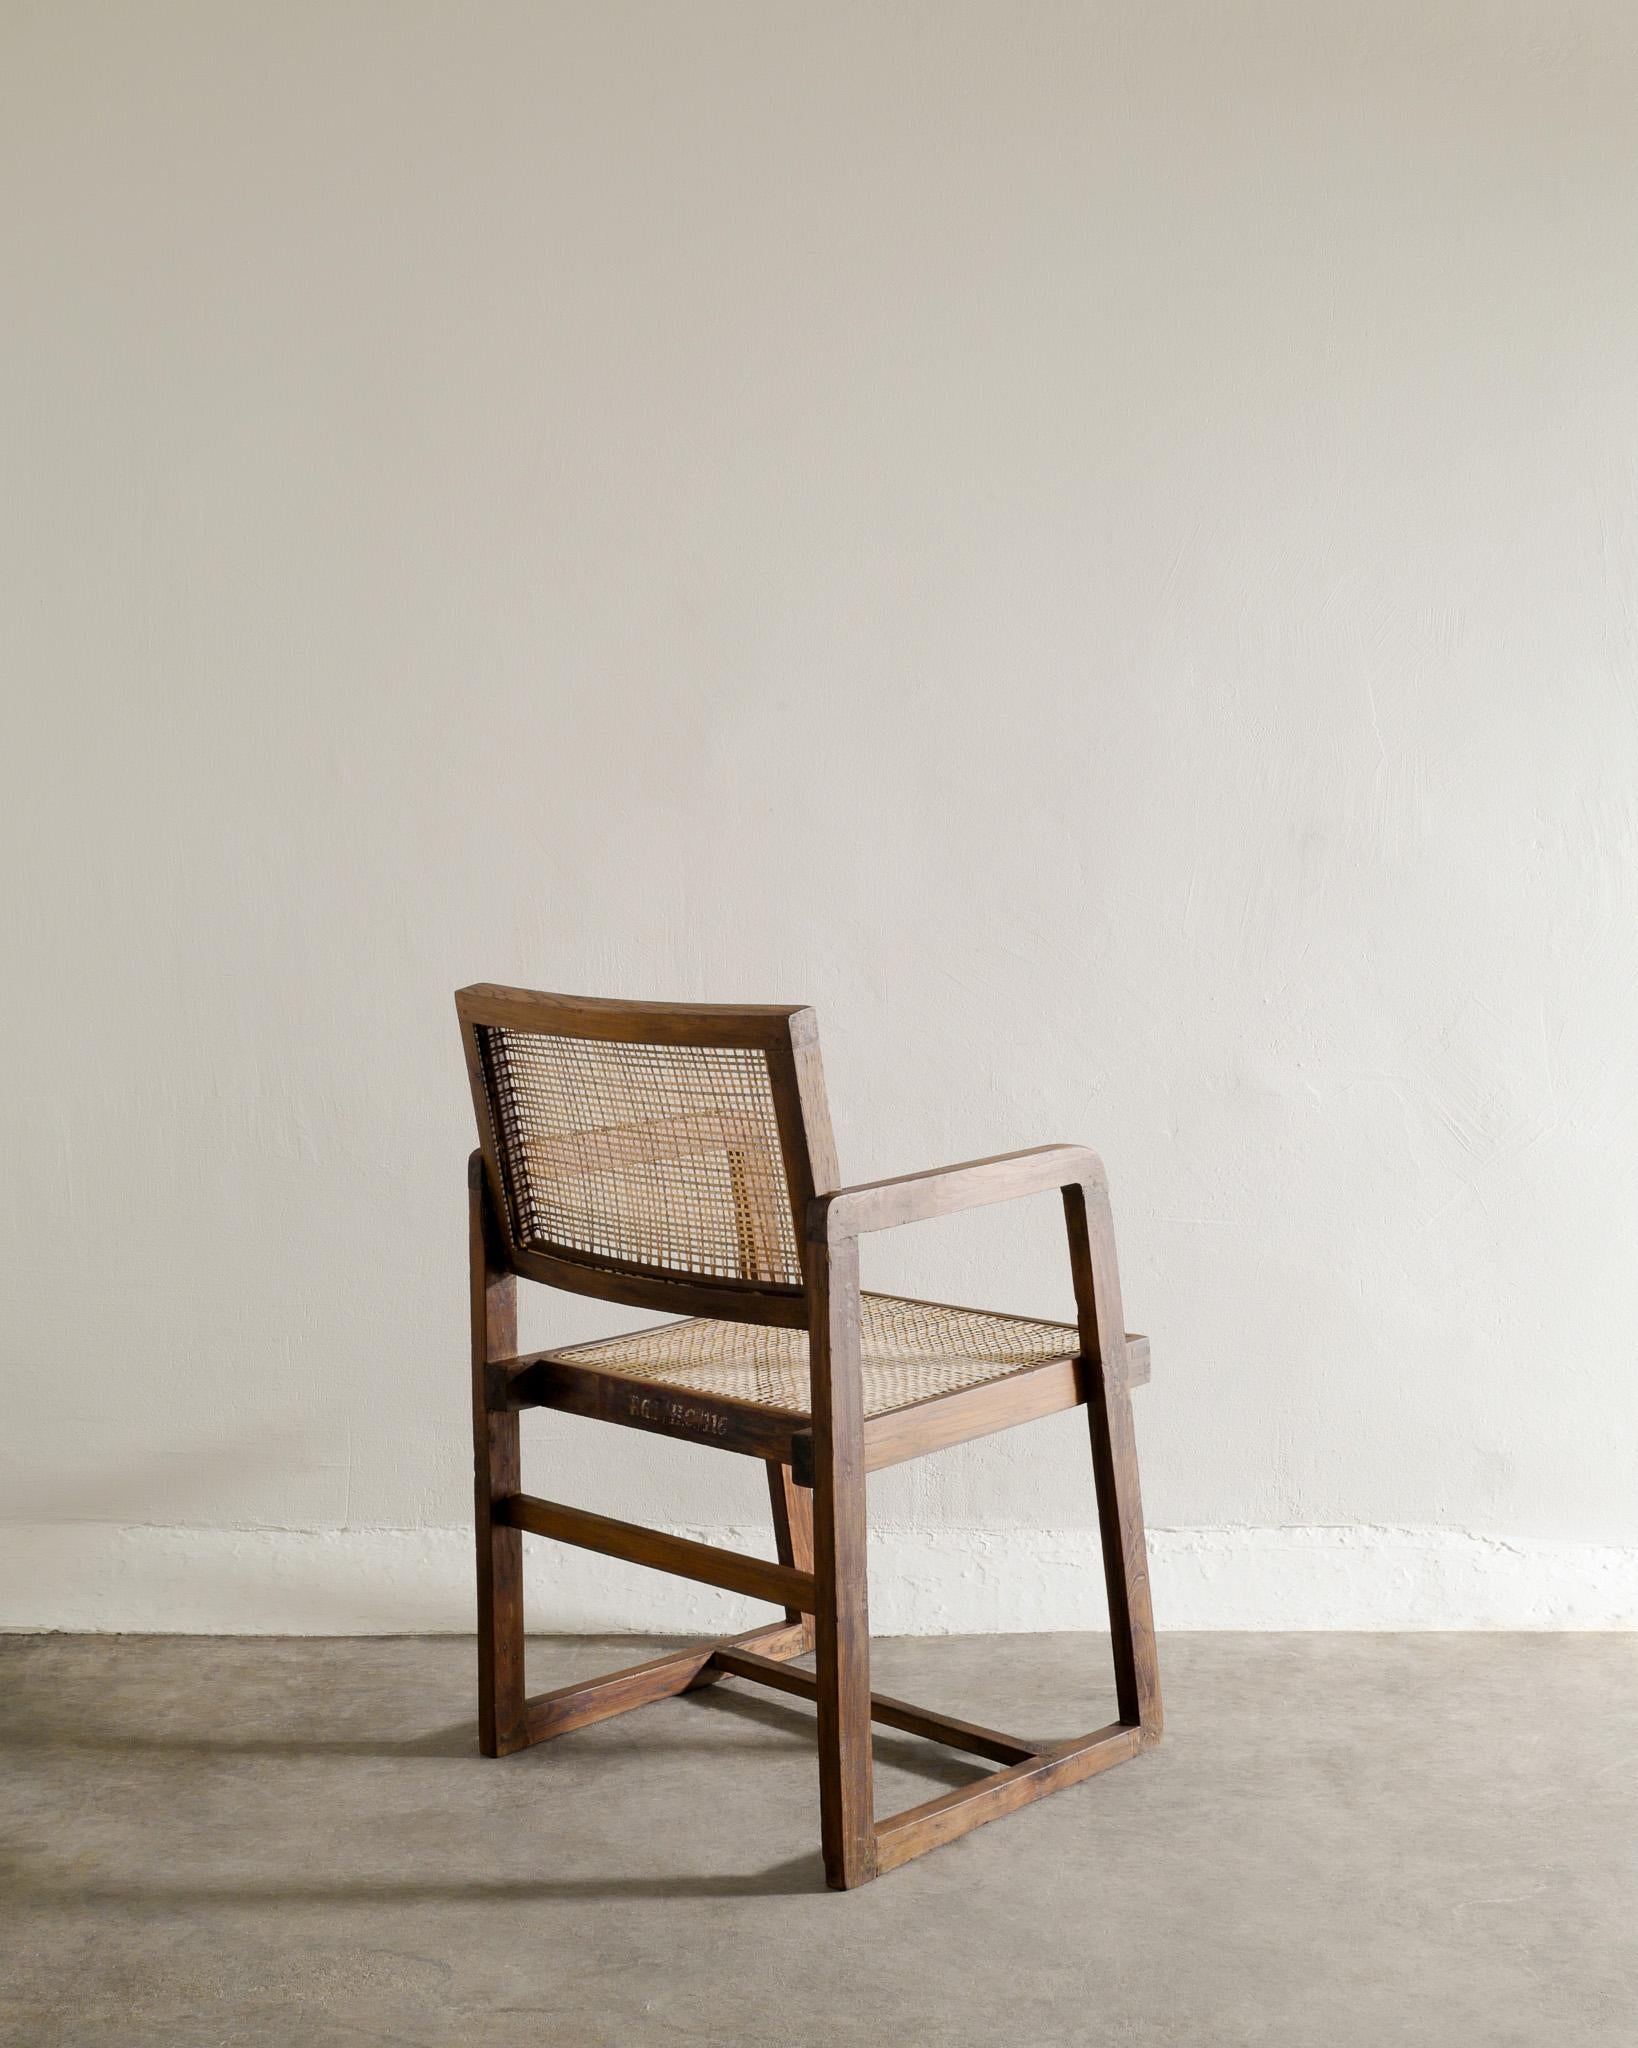 Très rare chaise de bureau de milieu de siècle en teck massif teinté et rotin par Pierre Jeanneret / Le Corbusier pour leur projet Chandigarh en Inde dans les années 1950. En bon état et nettoyés professionnellement par nos soins. Signé avec un beau